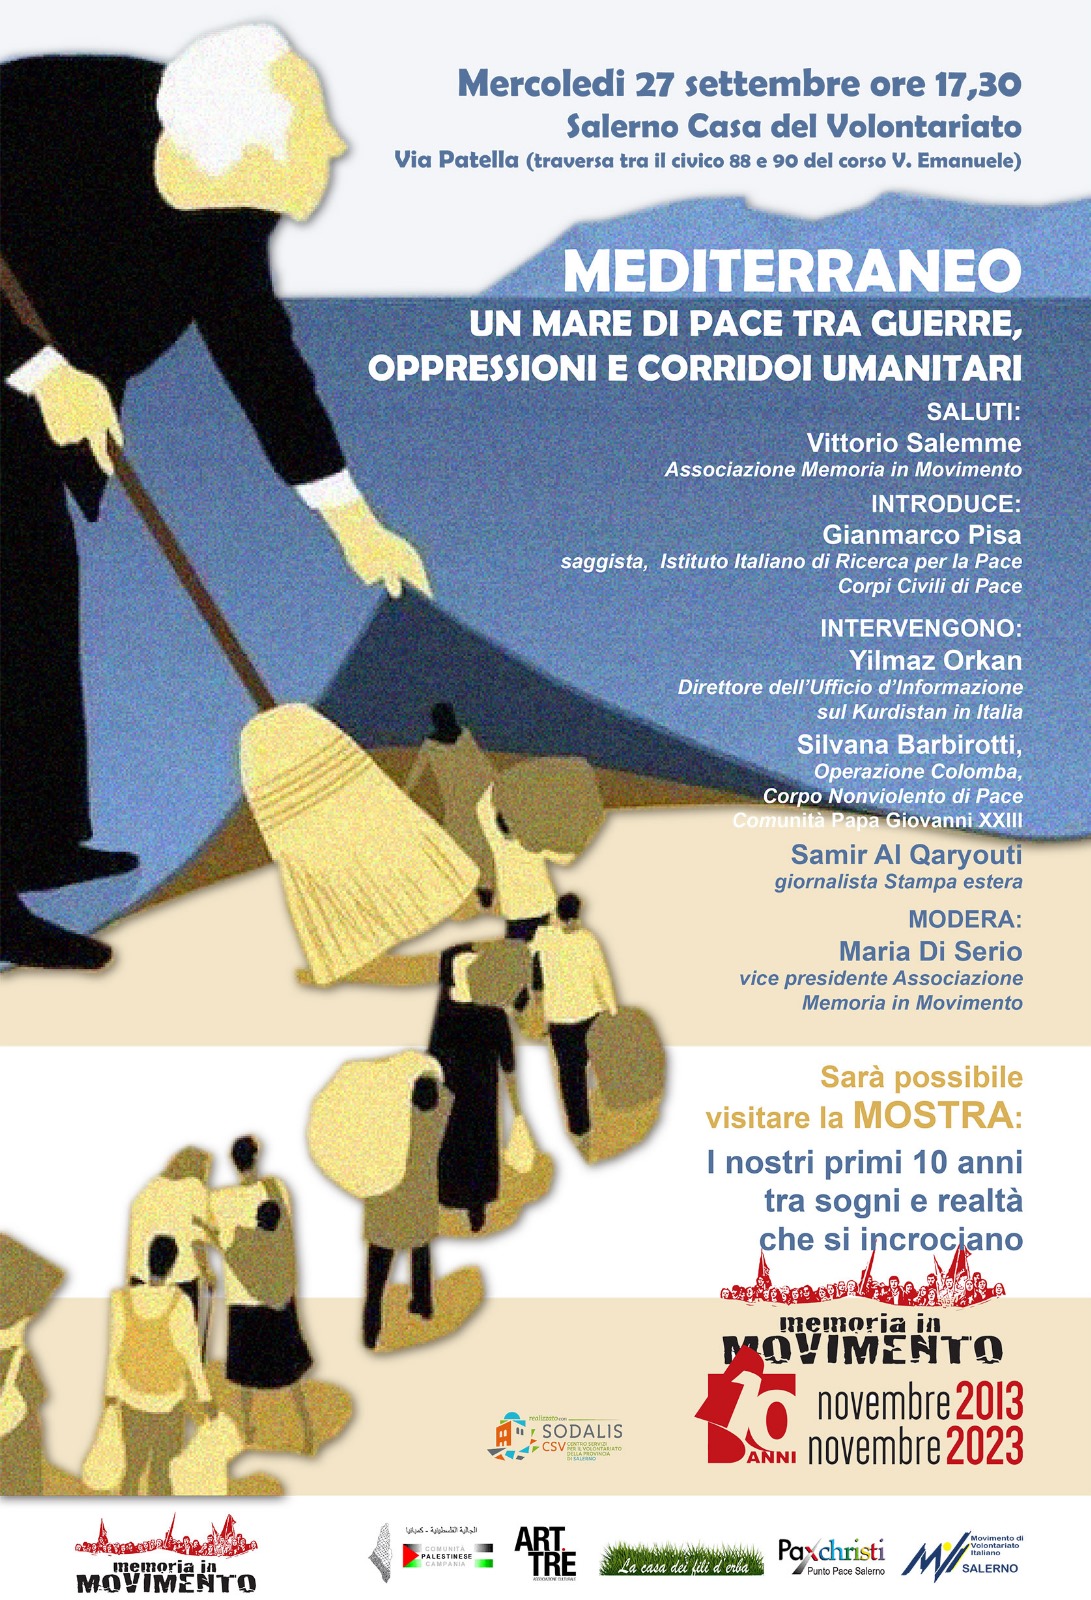 Salerno: Memoria in Movimento, convegno “Mediterraneo un mare di pace tra guerre, repressioni e corridoi umanitari”, conferenza stampa